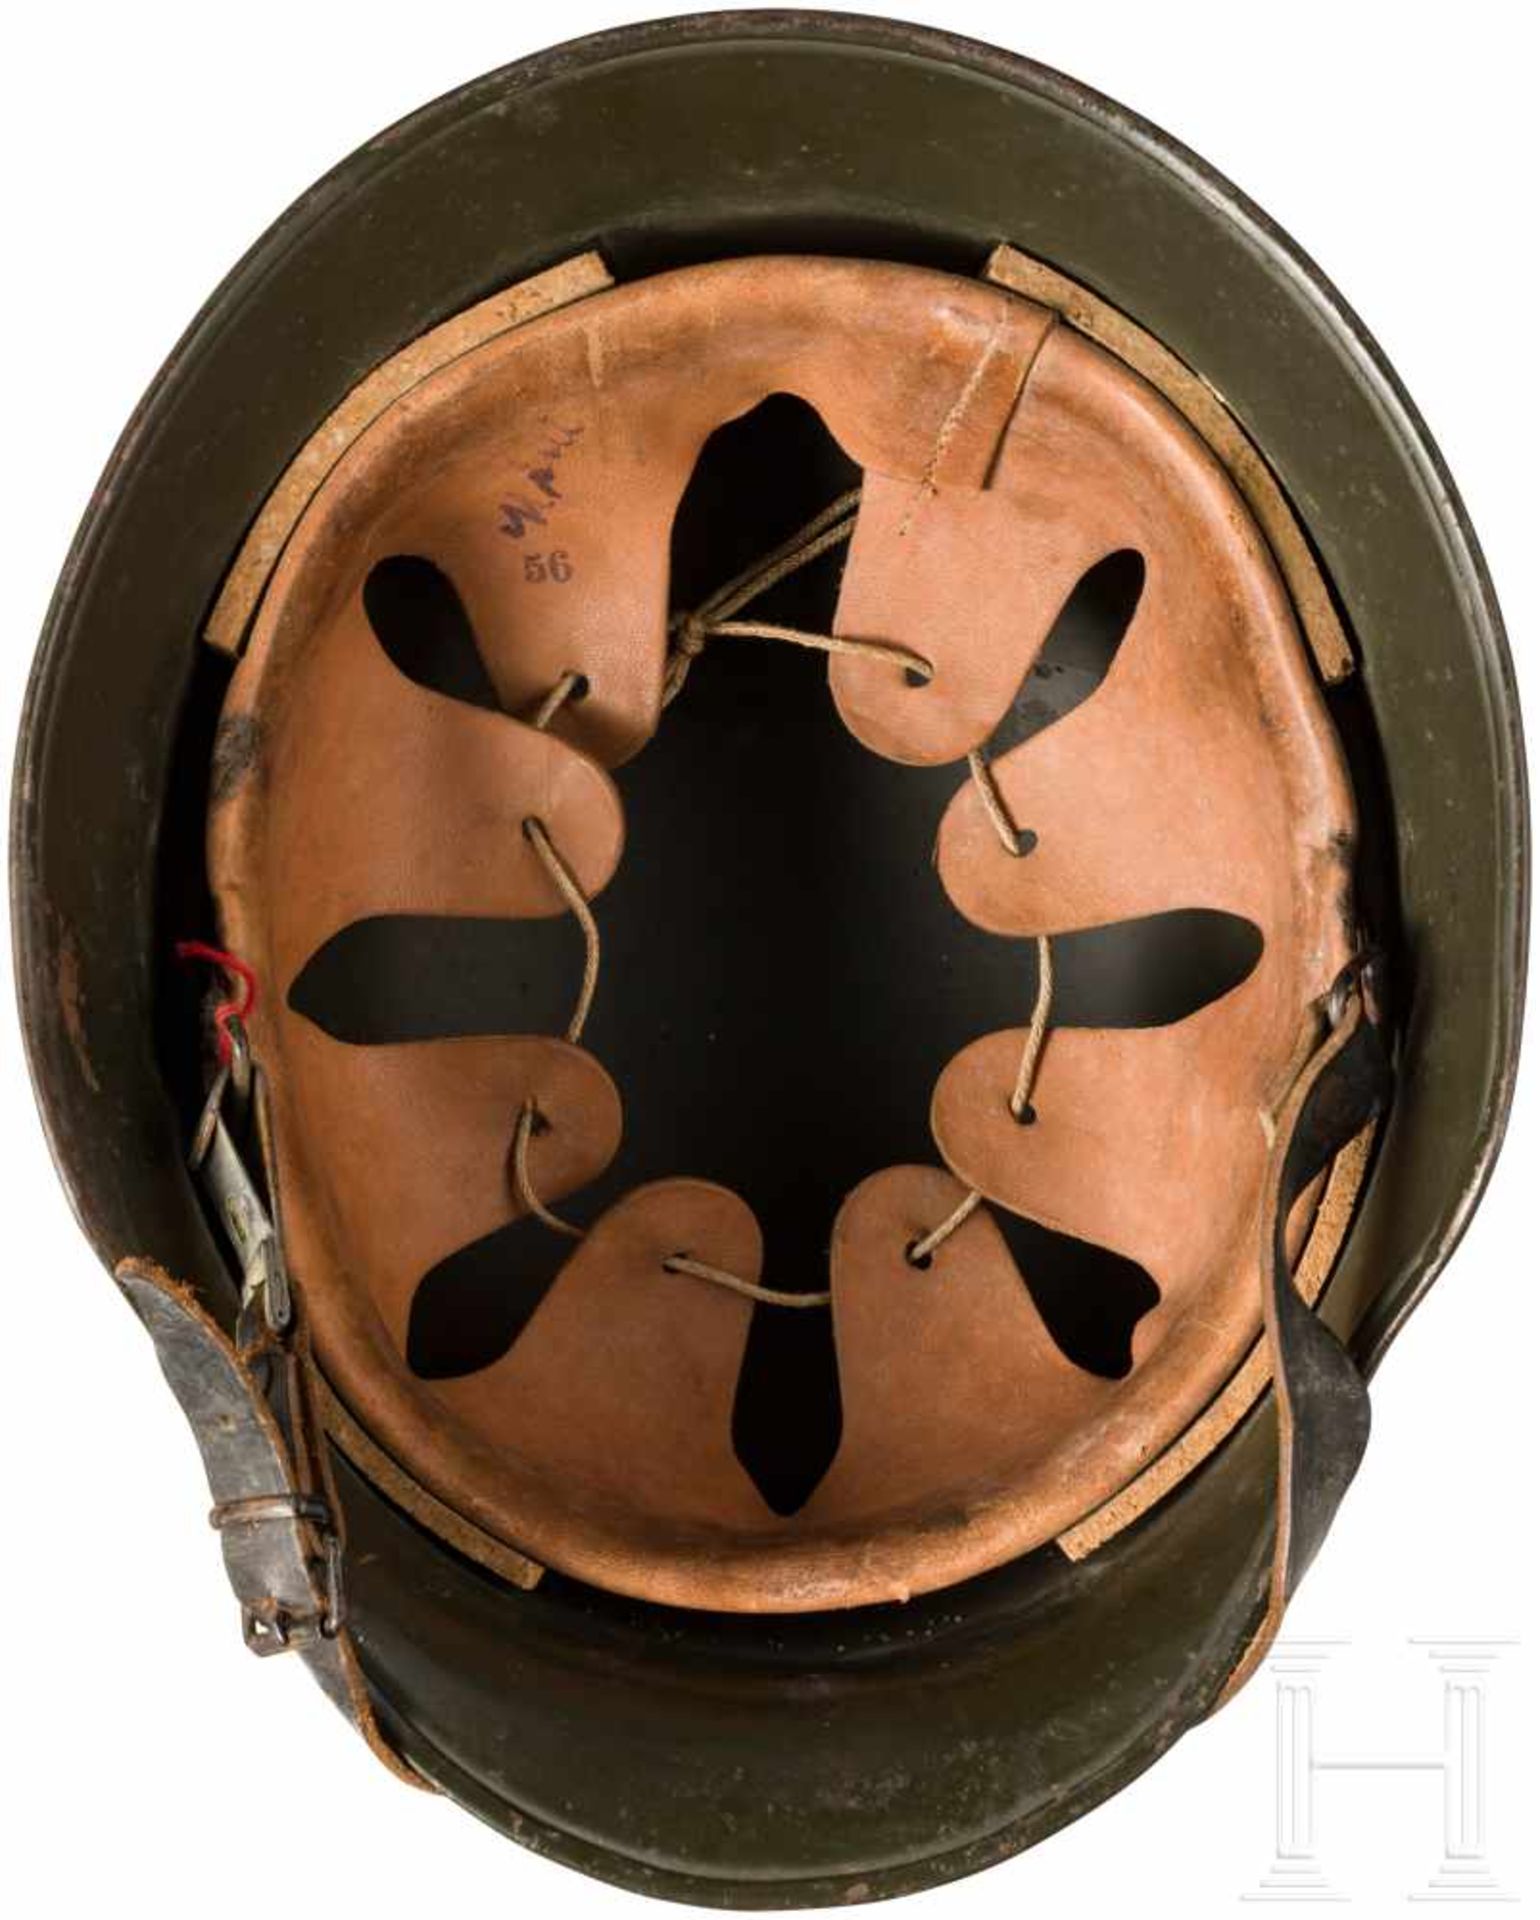 Stahlhelm für RotkreuzangehörigeZiviler Helm mit seitlichem Rot Kreuz-Emblem. Ohne Obligo.Zustand: - Bild 3 aus 3